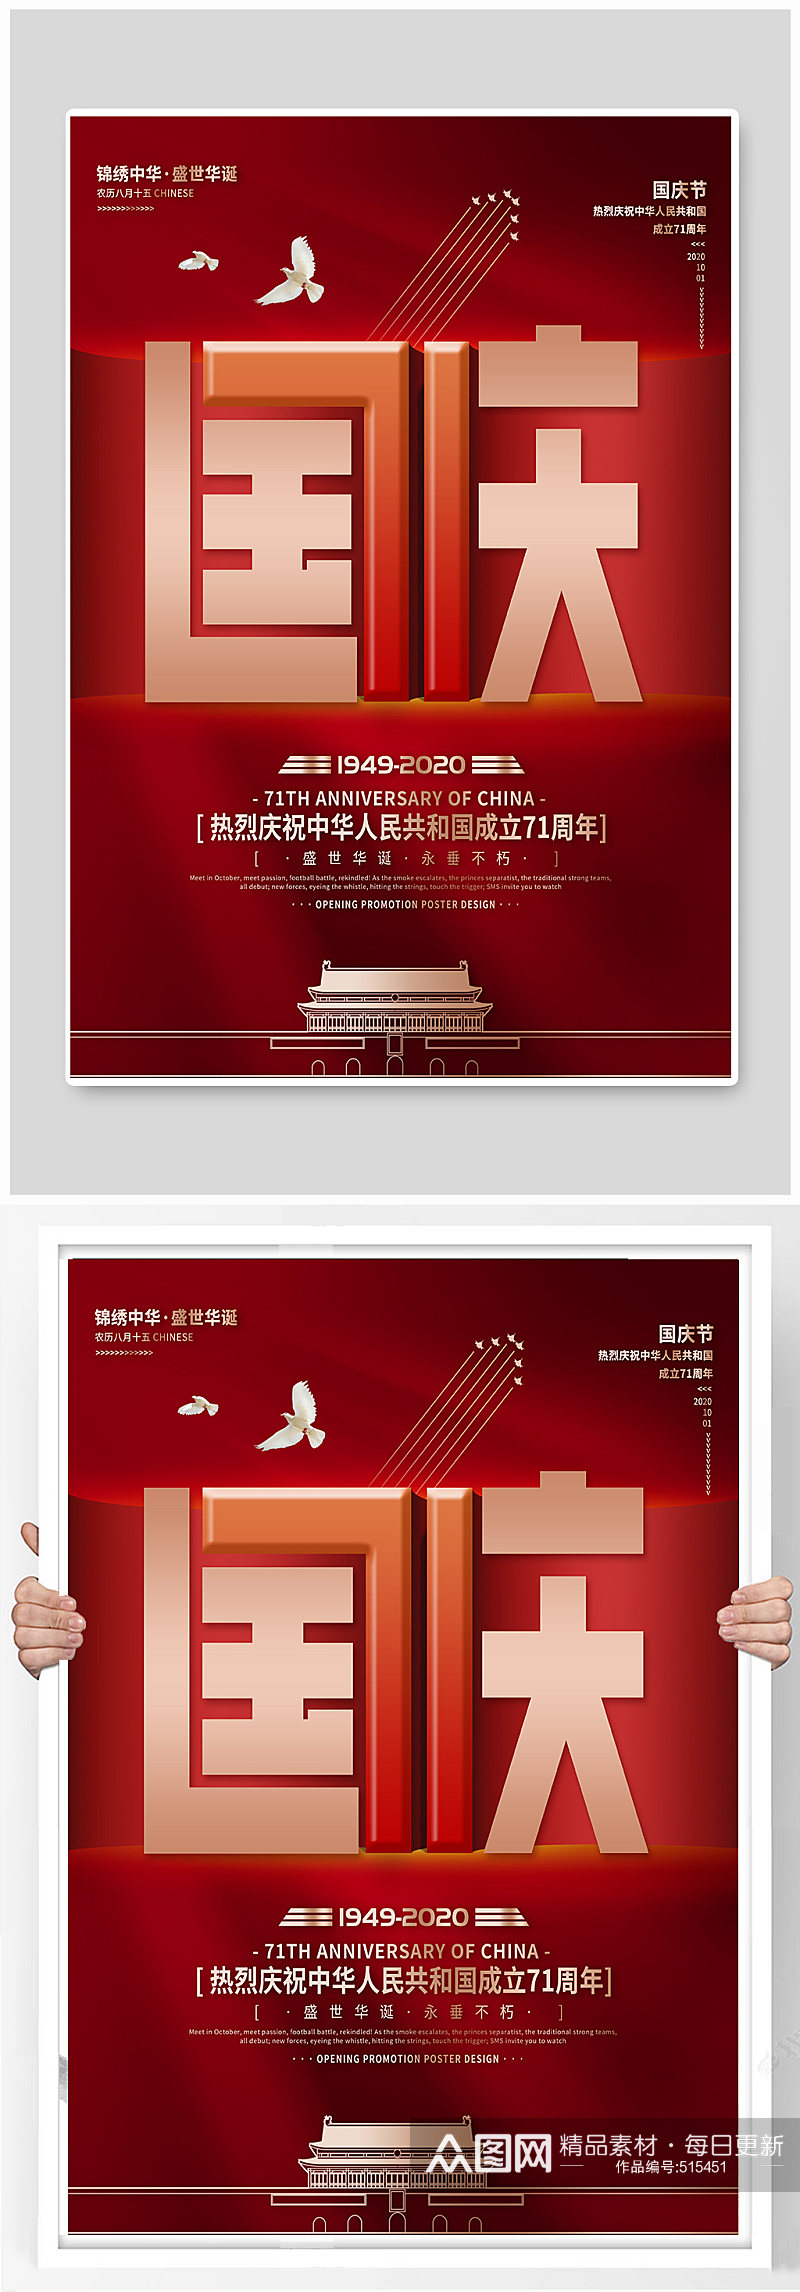 新中国成立71周年宣传海报素材